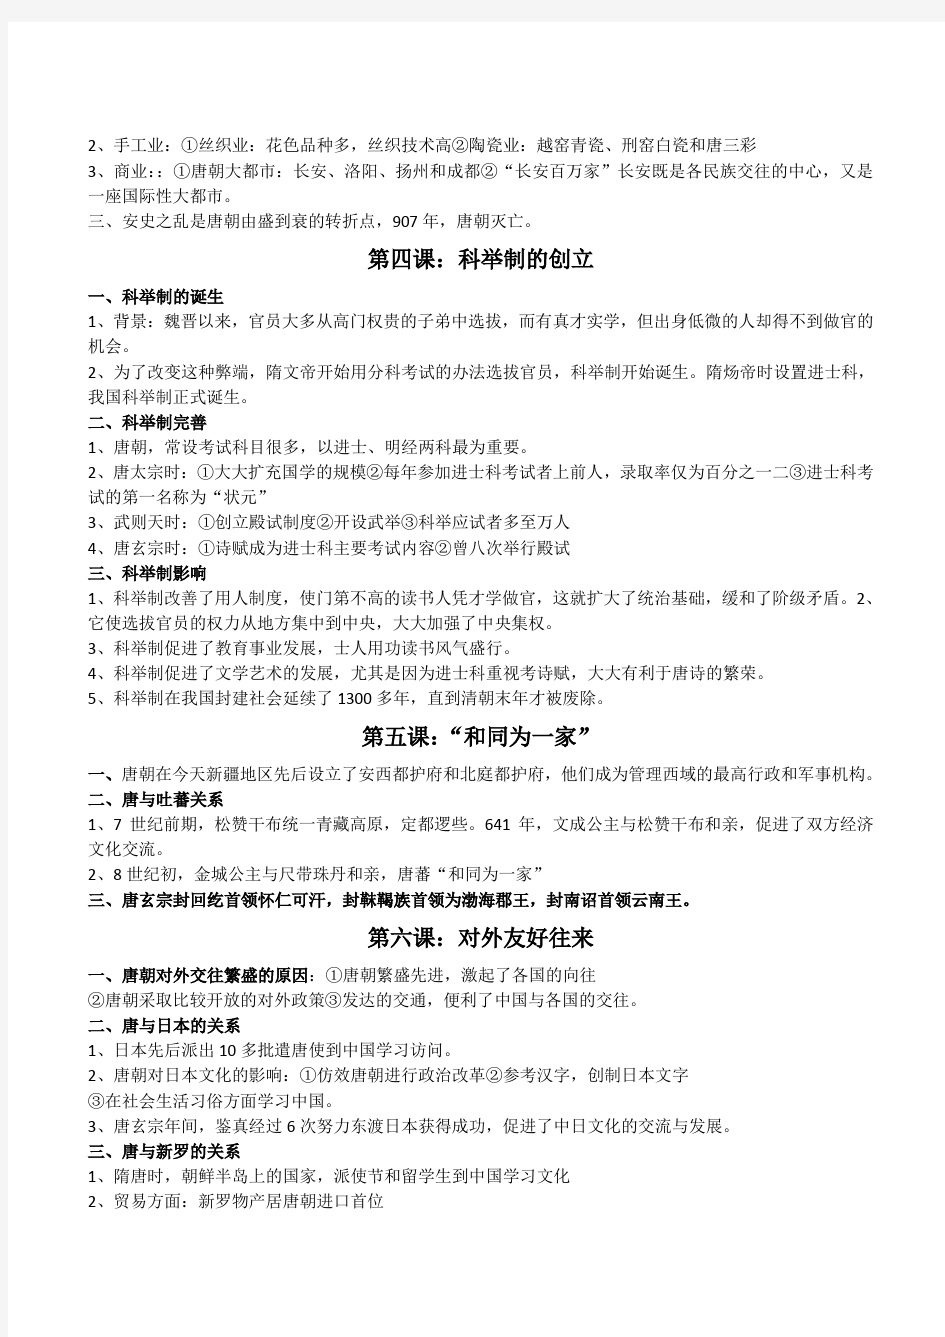 人教版七年级中国历史(下册)复习提纲知识要点整理